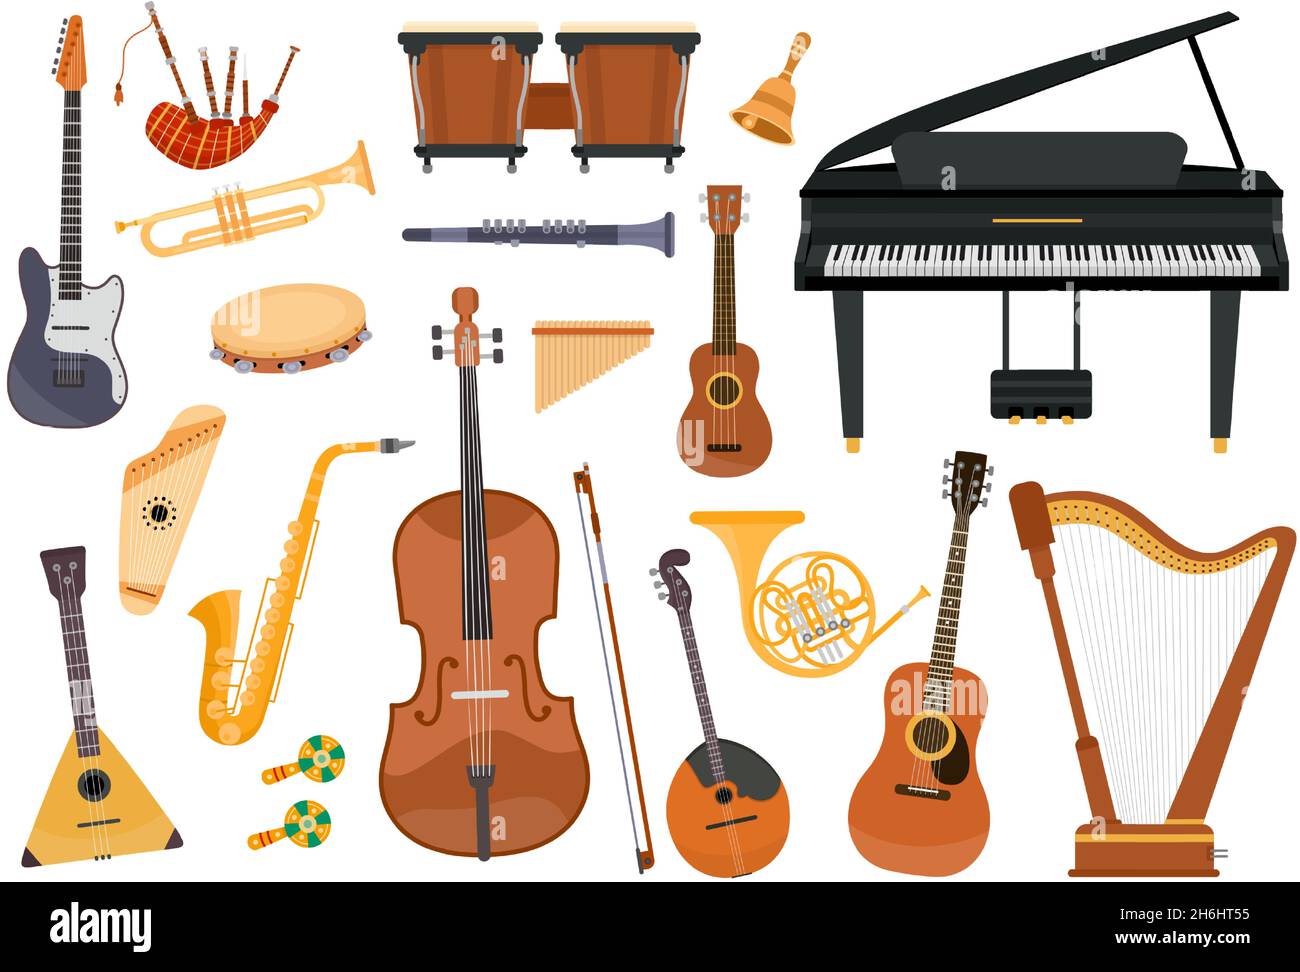 Instruments de musique classique de dessin animé, piano, trombone et harpe.Matériel d'orchestre folklorique, tambourine, pipes, ukulele et jeu de vecteurs de guitare Illustration de Vecteur